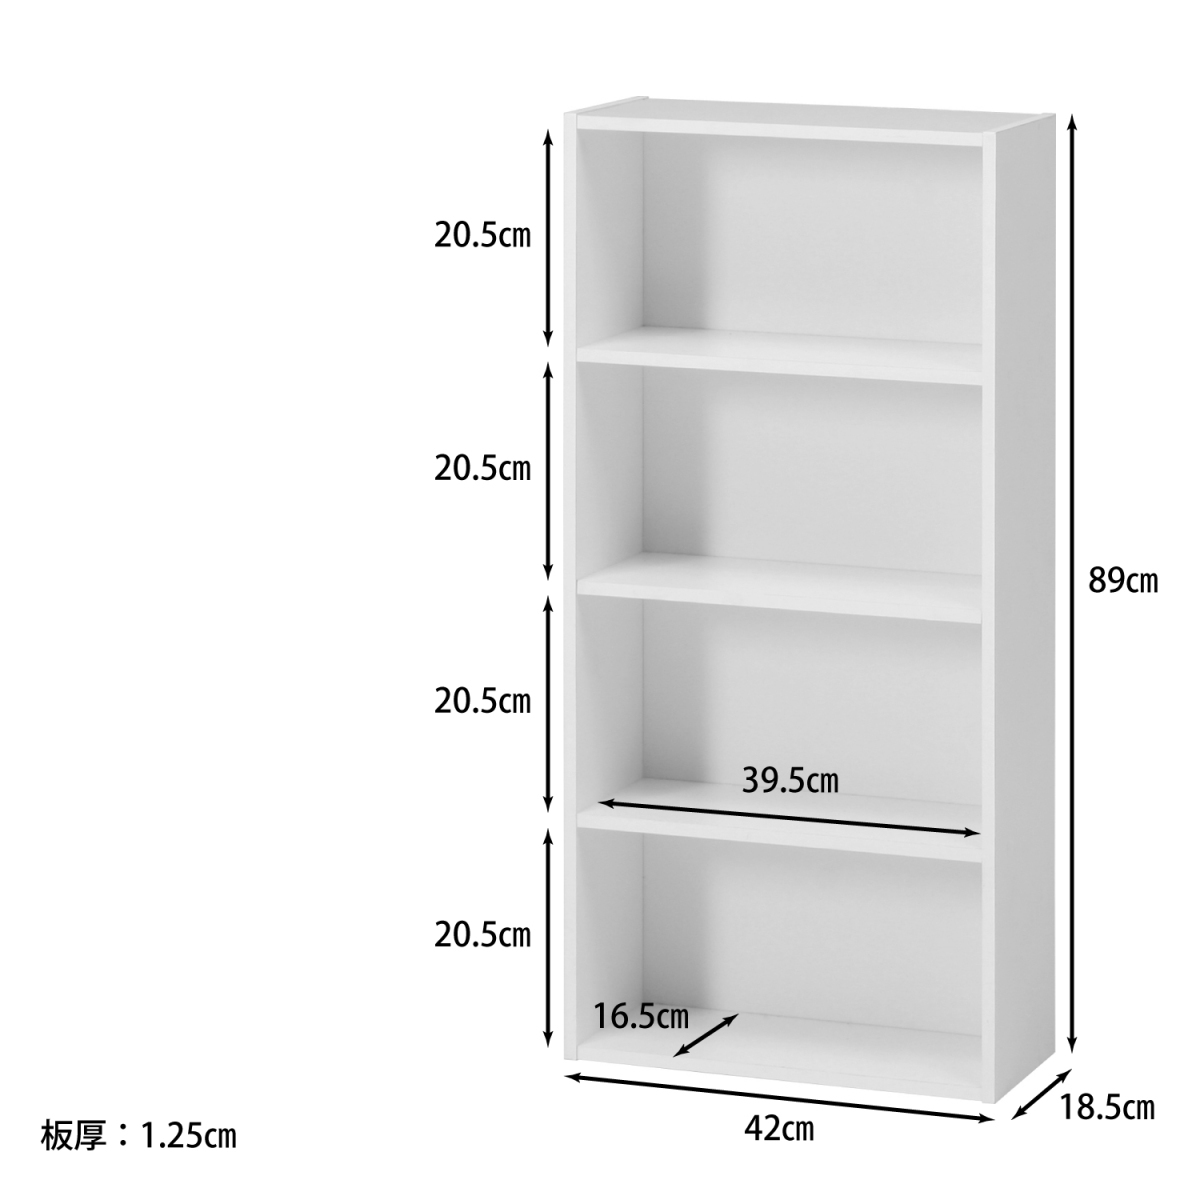 2 шт. комплект 4 уровень цвет box белый ширина 42cm высота 89cm [ новый товар ][ бесплатная доставка ]( Hokkaido Okinawa отдаленный остров доставка отдельно )